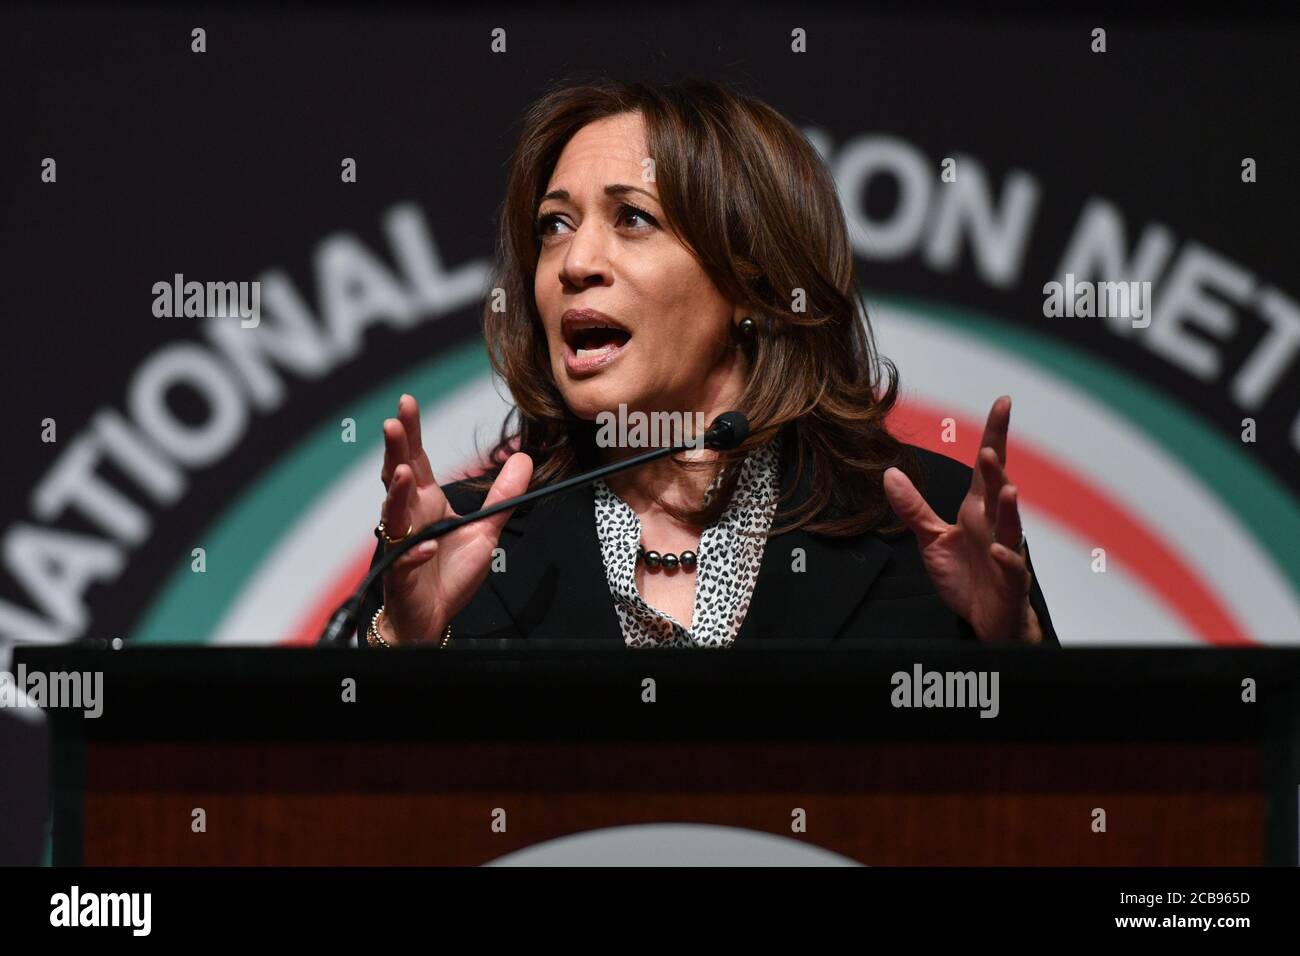 Kamala Harris (D-CA), candidata presidencial democrática, habla en la convención anual de la Red Nacional de Acción, el 5 de abril de 2019 en Nueva York Foto de stock